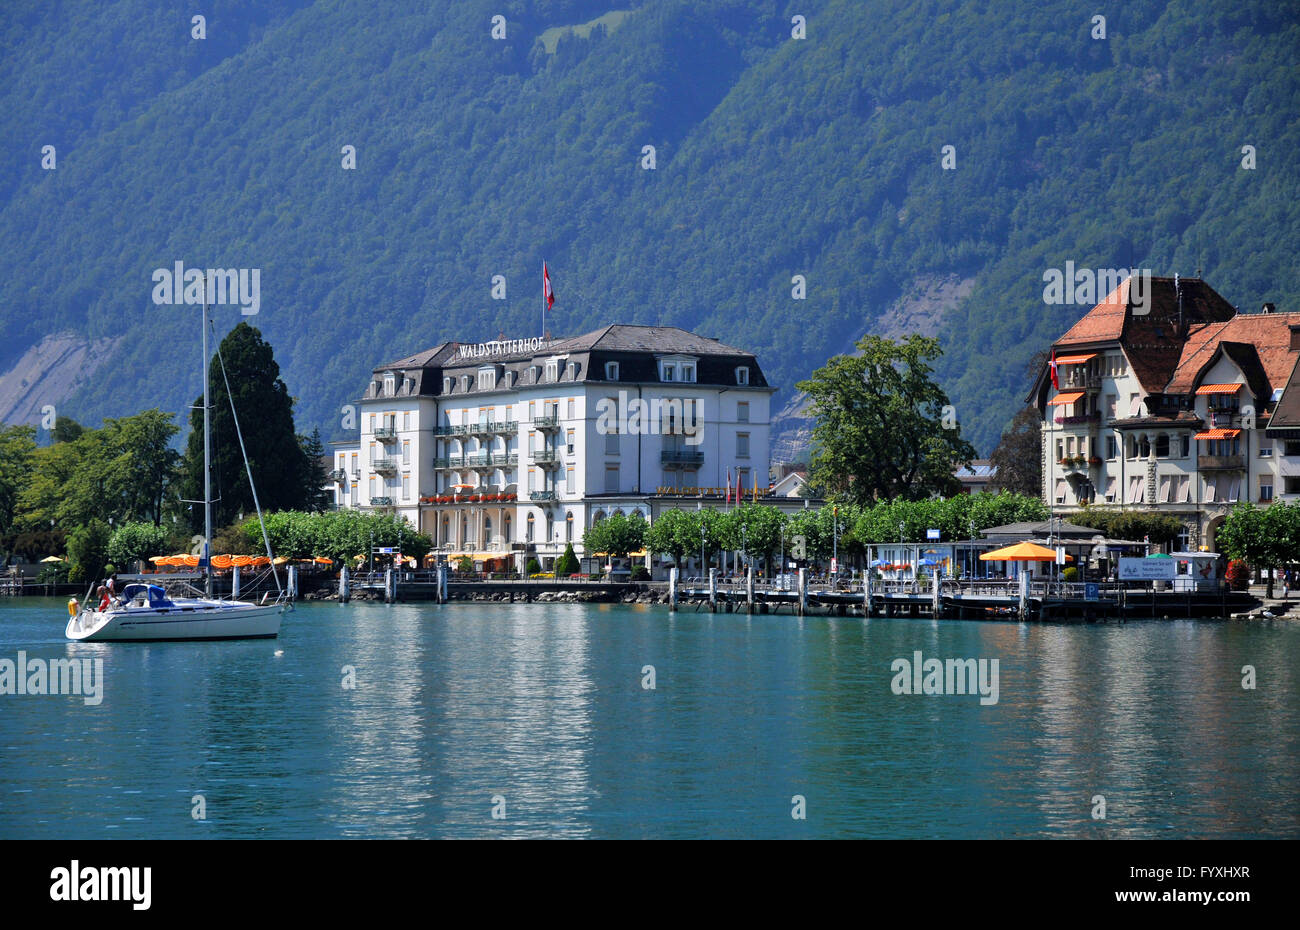 Hotel Waldstatterhof, il Lago di Lucerna, Brunnen, Canton Svitto, Svizzera / Vierwaldstattersee, Vierwaldstättersee, il Lago dei Quattro Cantoni boscose, Hotel Waldstätterhof Foto Stock